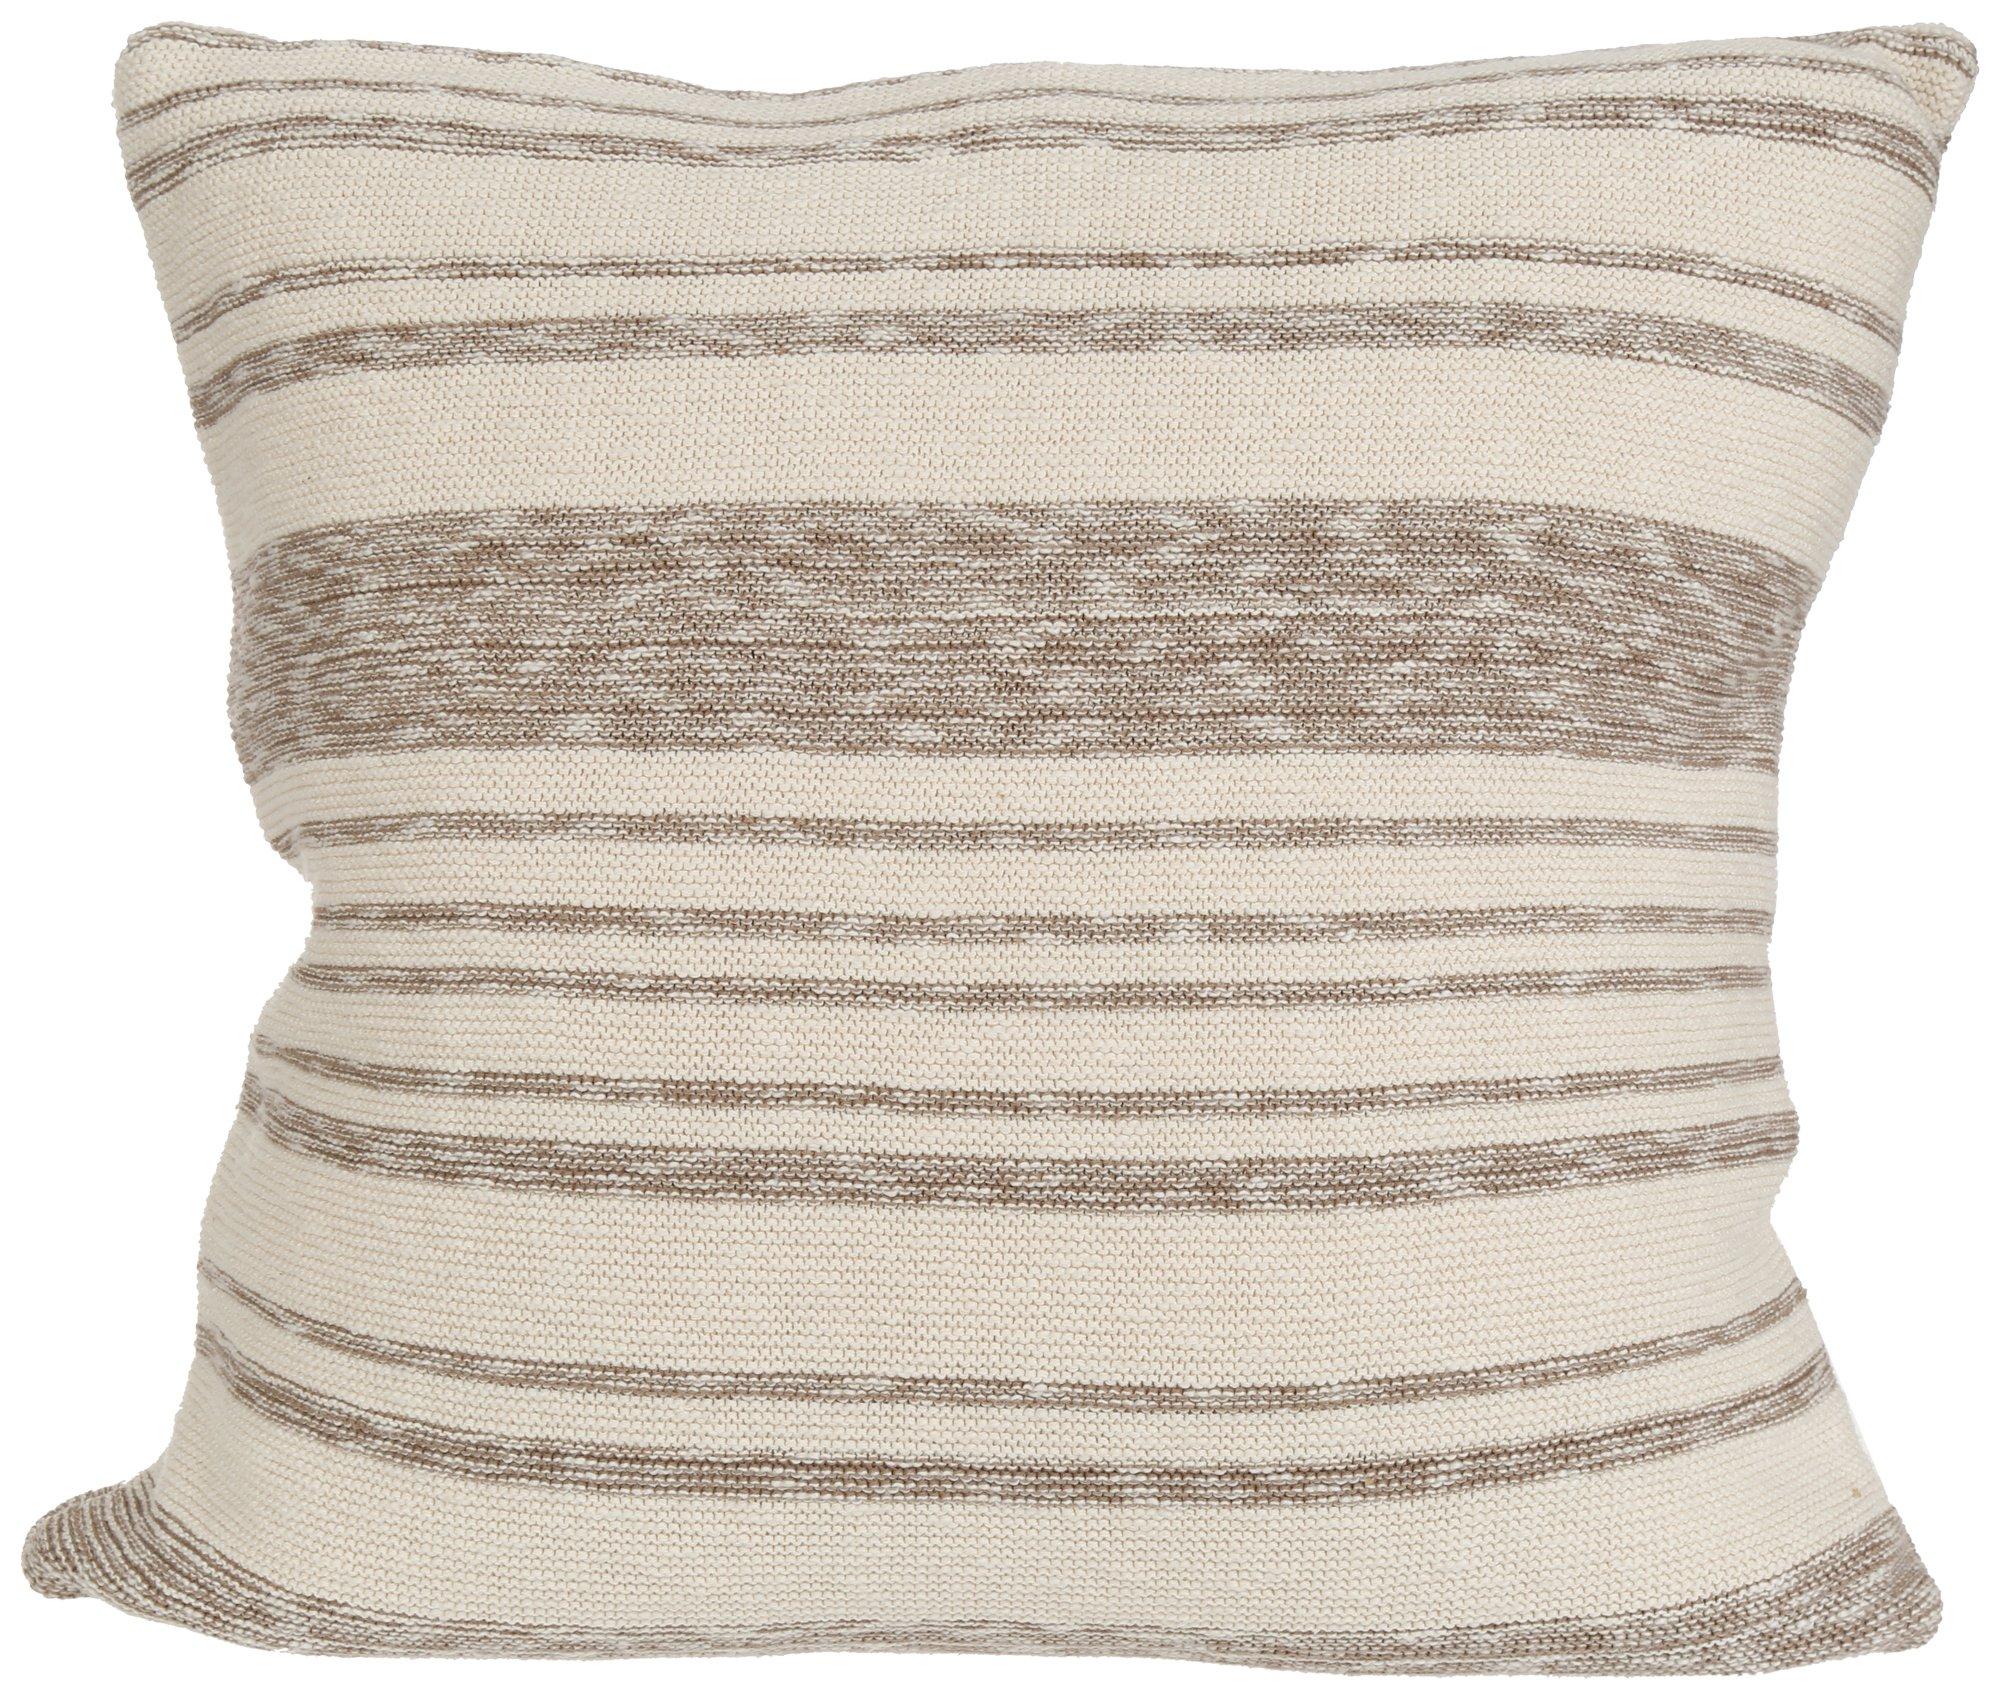 20x20 Stripe Decorative Throw Pillow